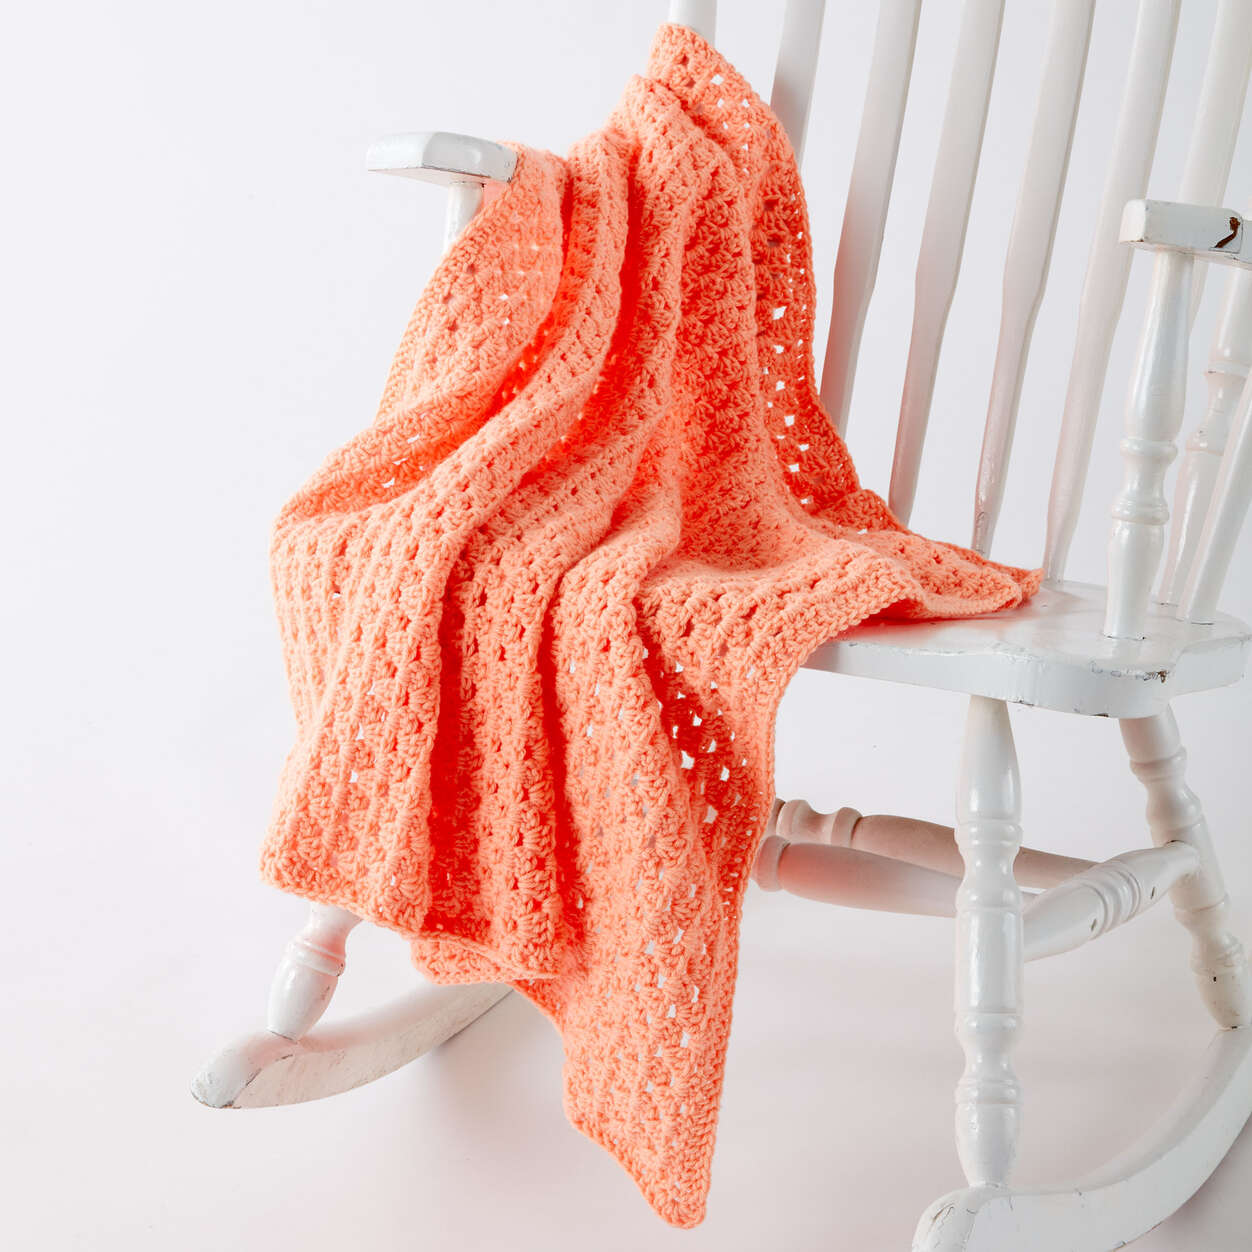 FREE Baby Orange: Crochet pattern